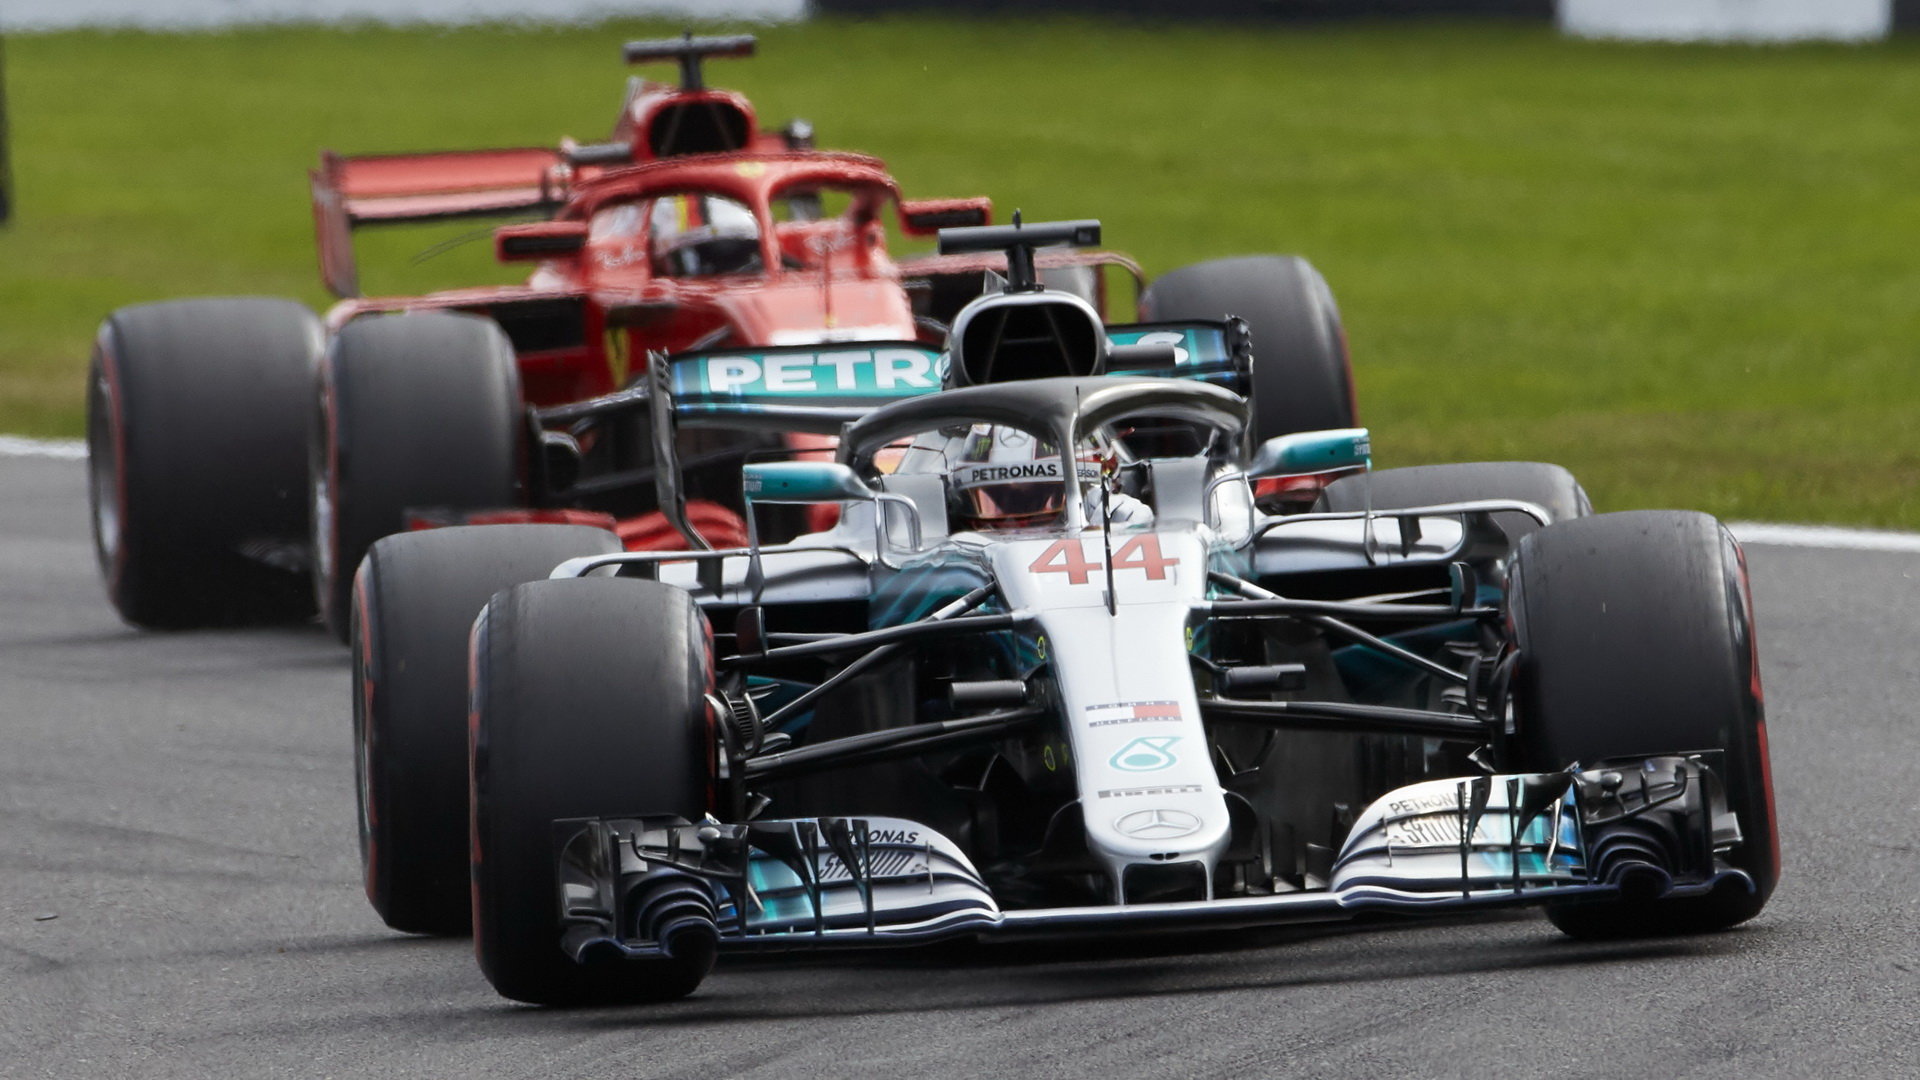 Lewis Hamilton v nejrychlejších kolech v Monze Sebastiana Vettela těsně předčil